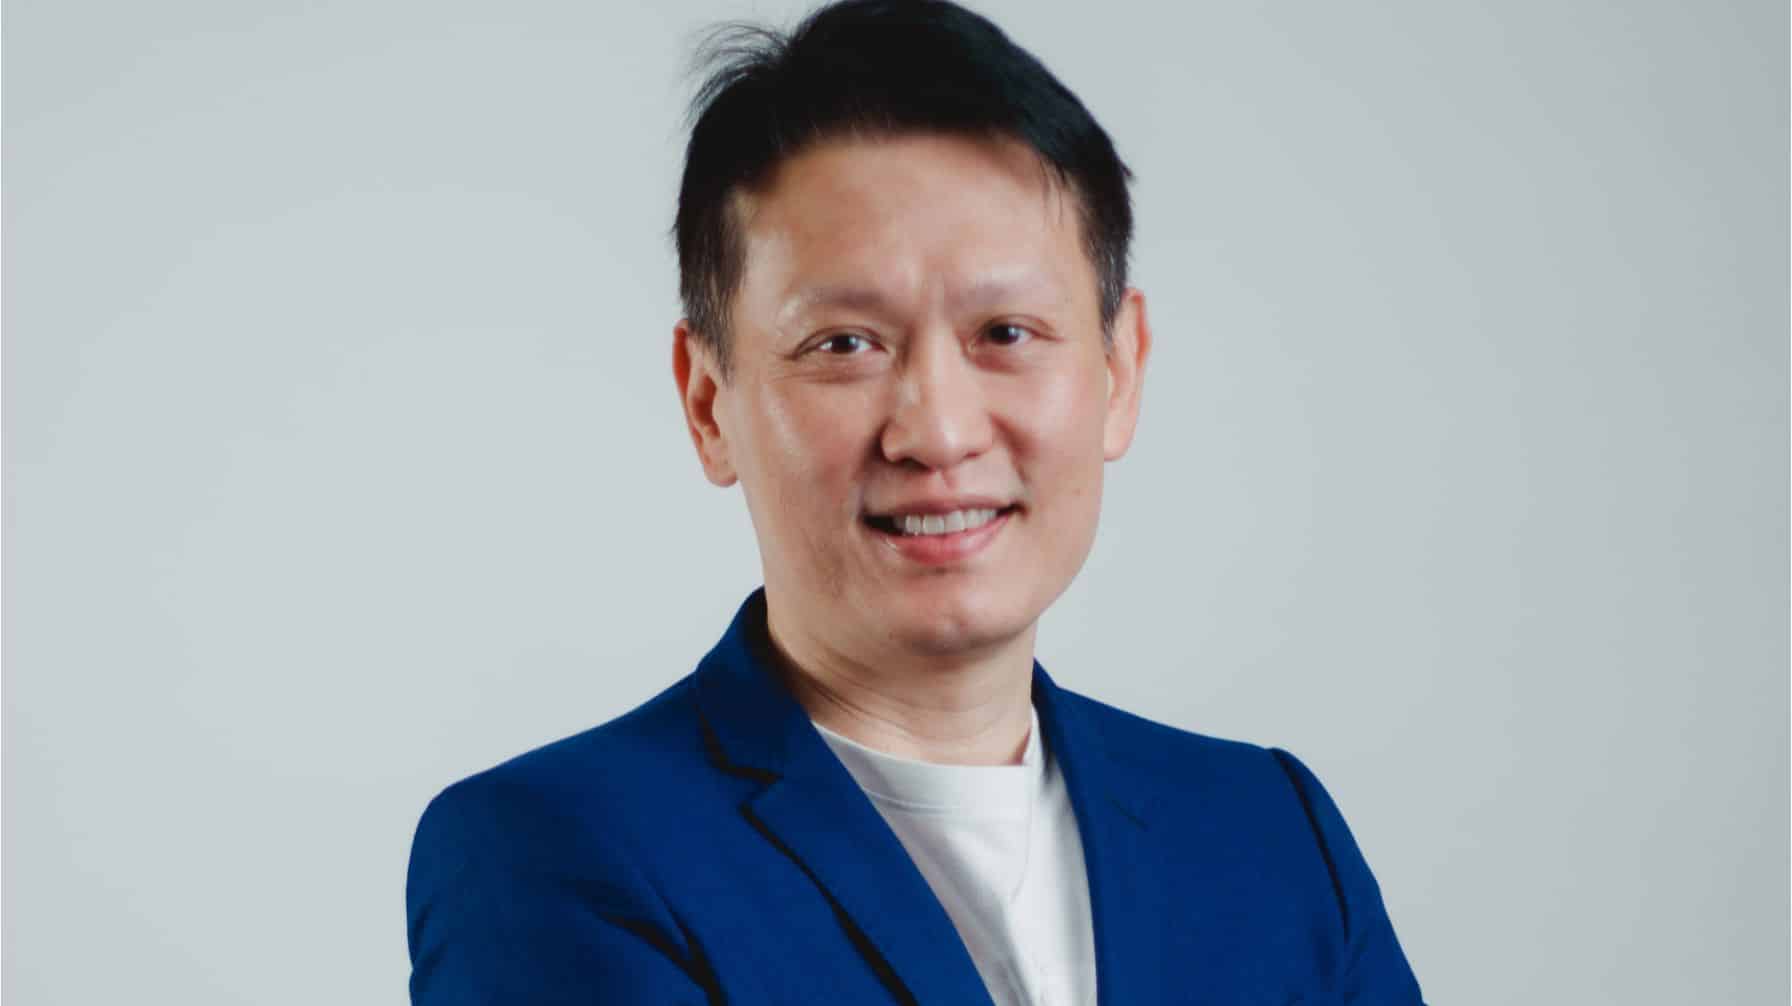 Lähikuva: Richard Teng – Binancen toimitusjohtaja